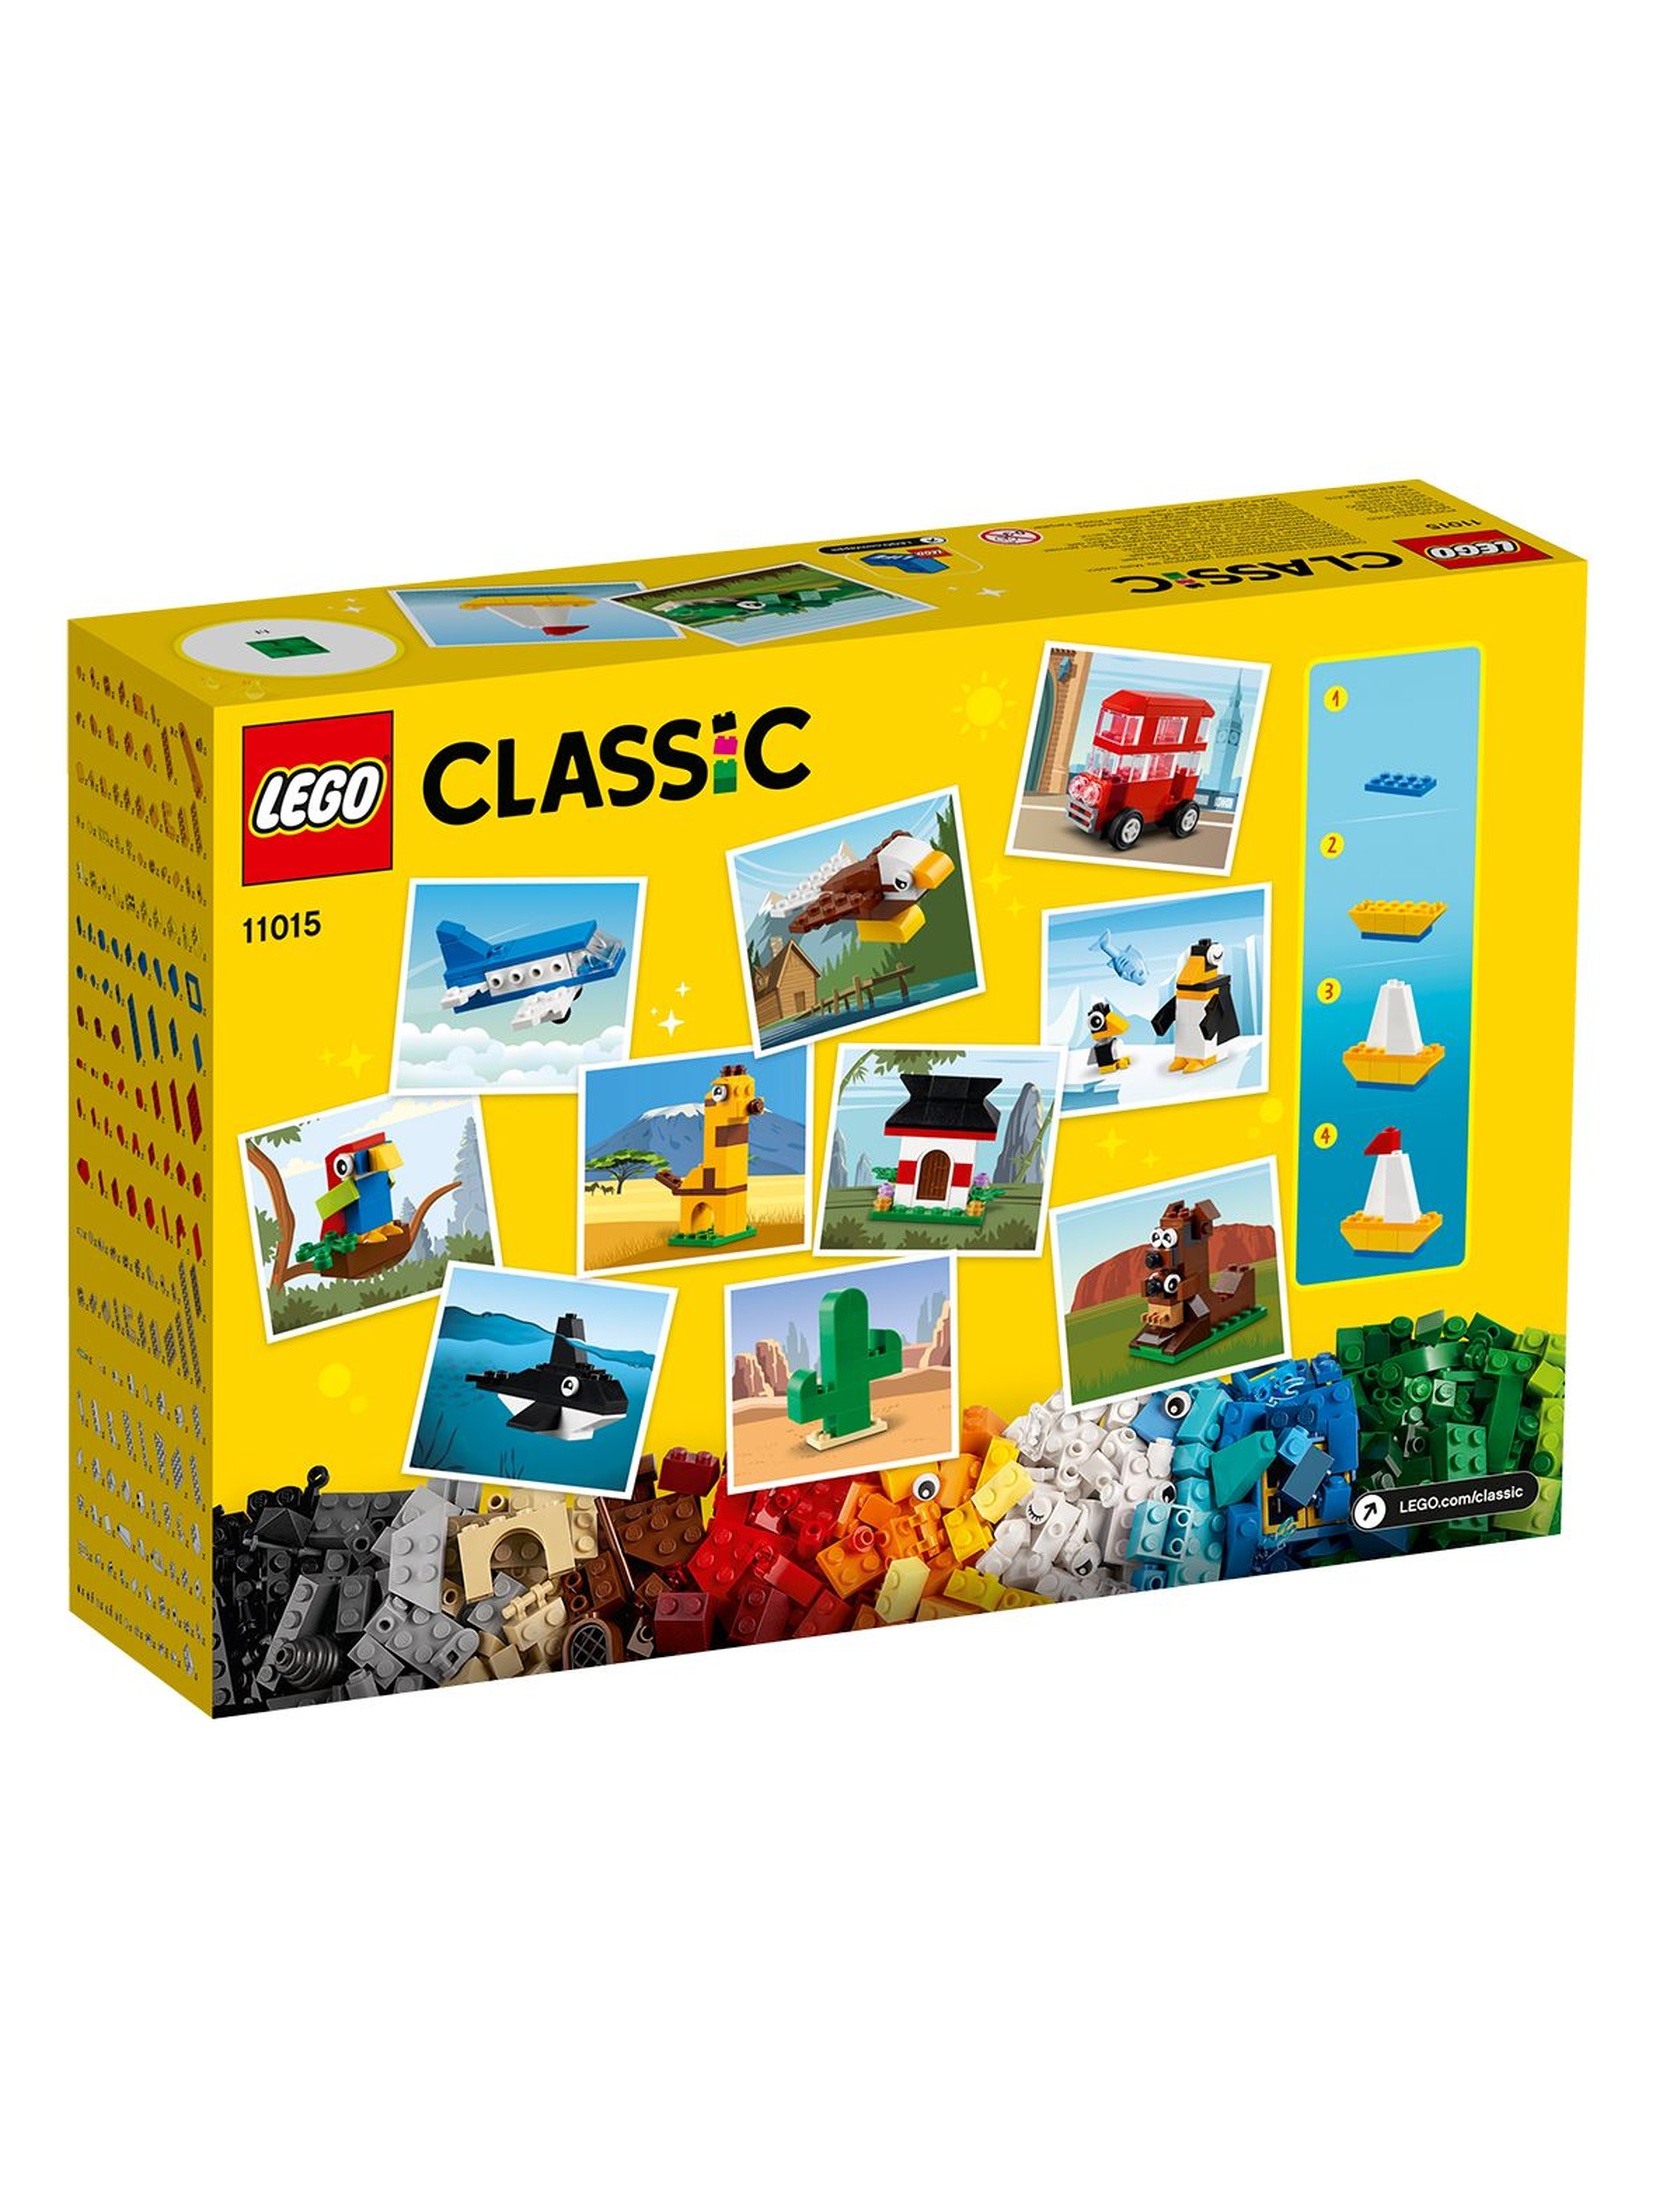 LEGO Classic - Dookoła świata - 950 elementów, wiek 4+